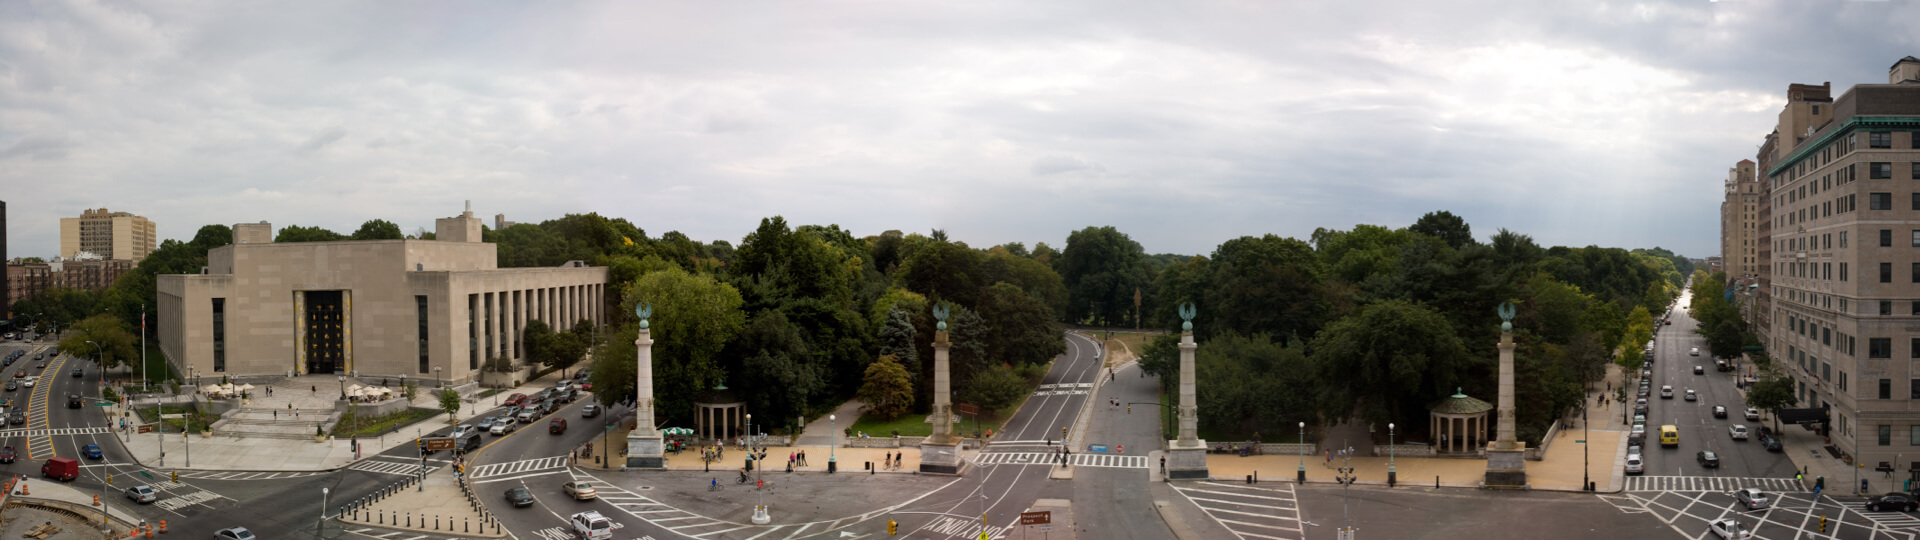 Grand Army Plaza panoramic view